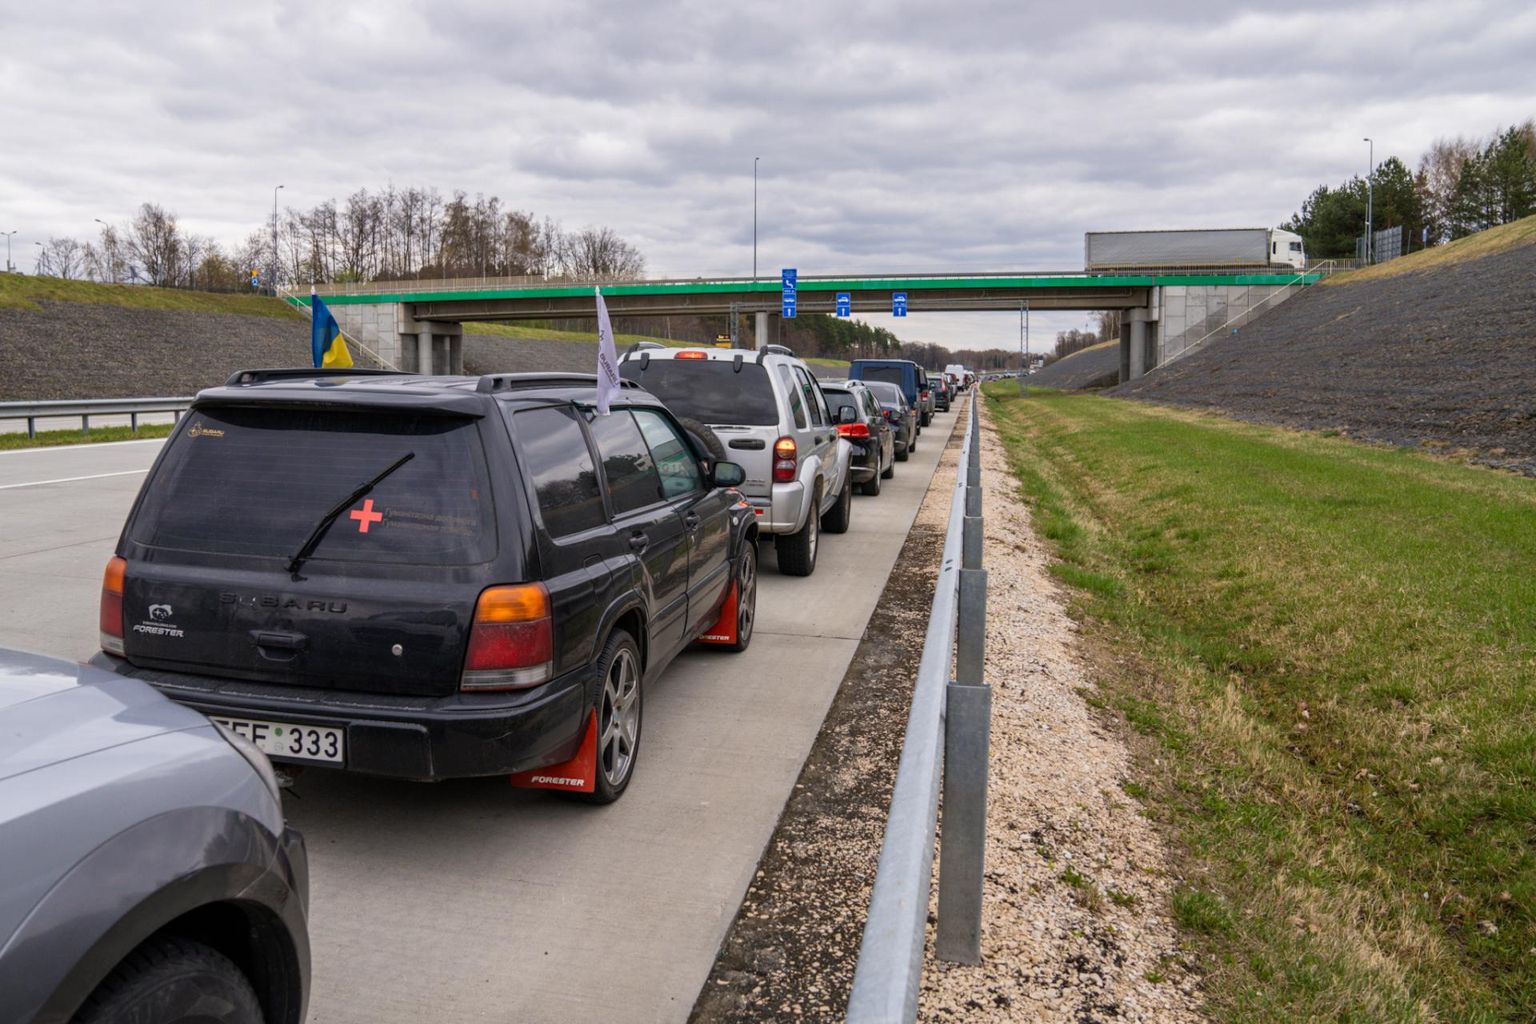 Korczowa határátkelő Lengyelországban Ukrajna felé.